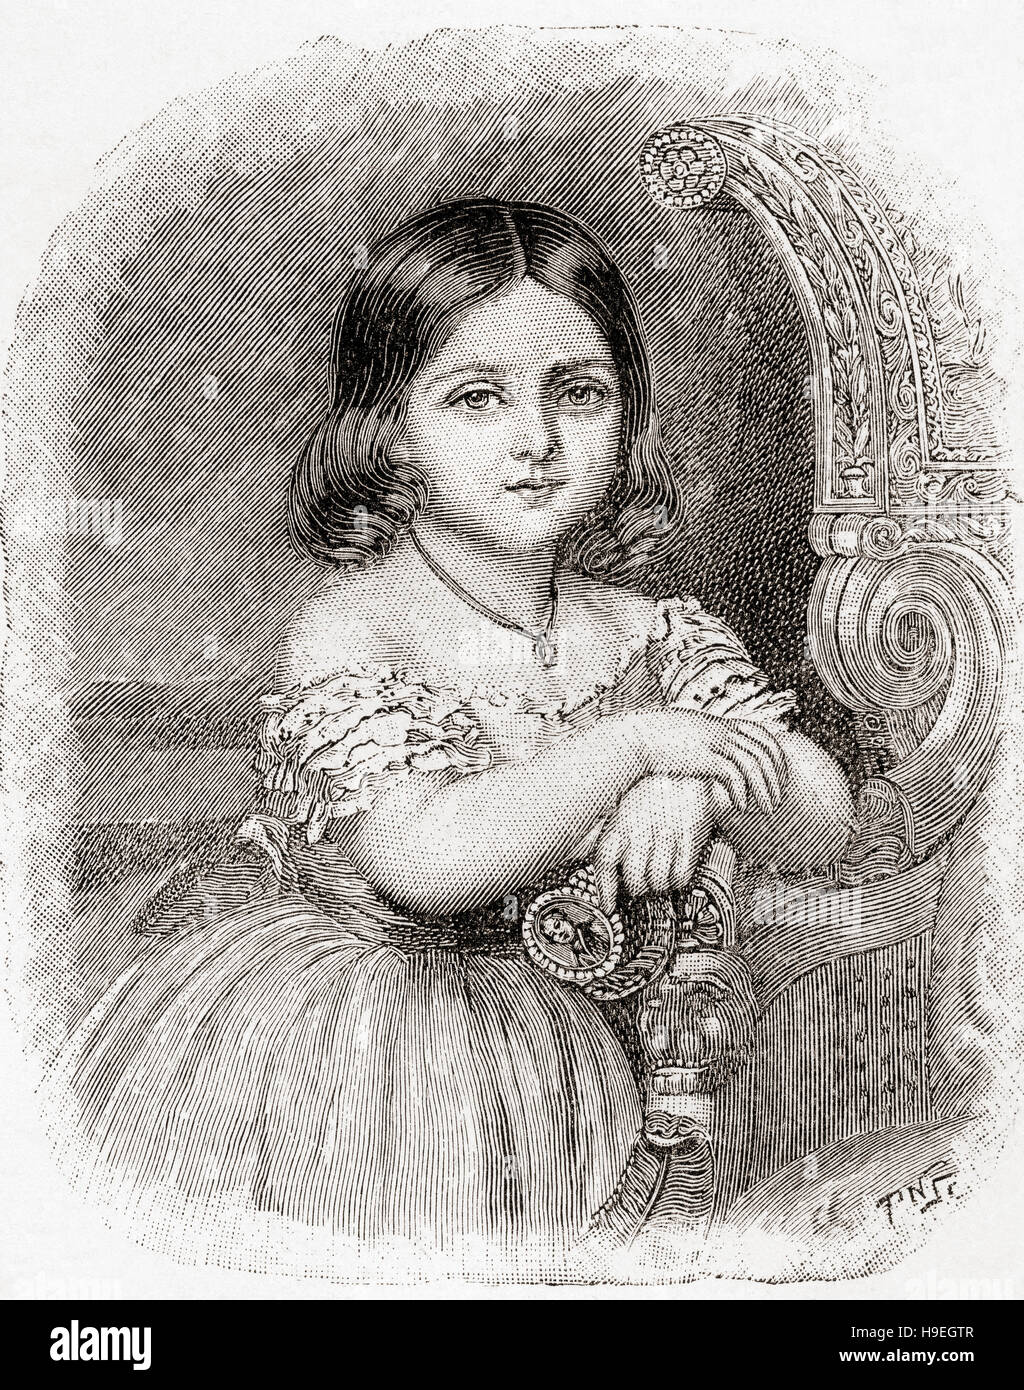 Victoria, princesse royale, 1840 - 1901. Fille de la reine Victoria et l'avenir de l'Impératrice allemande et Reine de Prusse par mariage à l'empereur allemand Frédéric III. Vu ici de 6. Banque D'Images